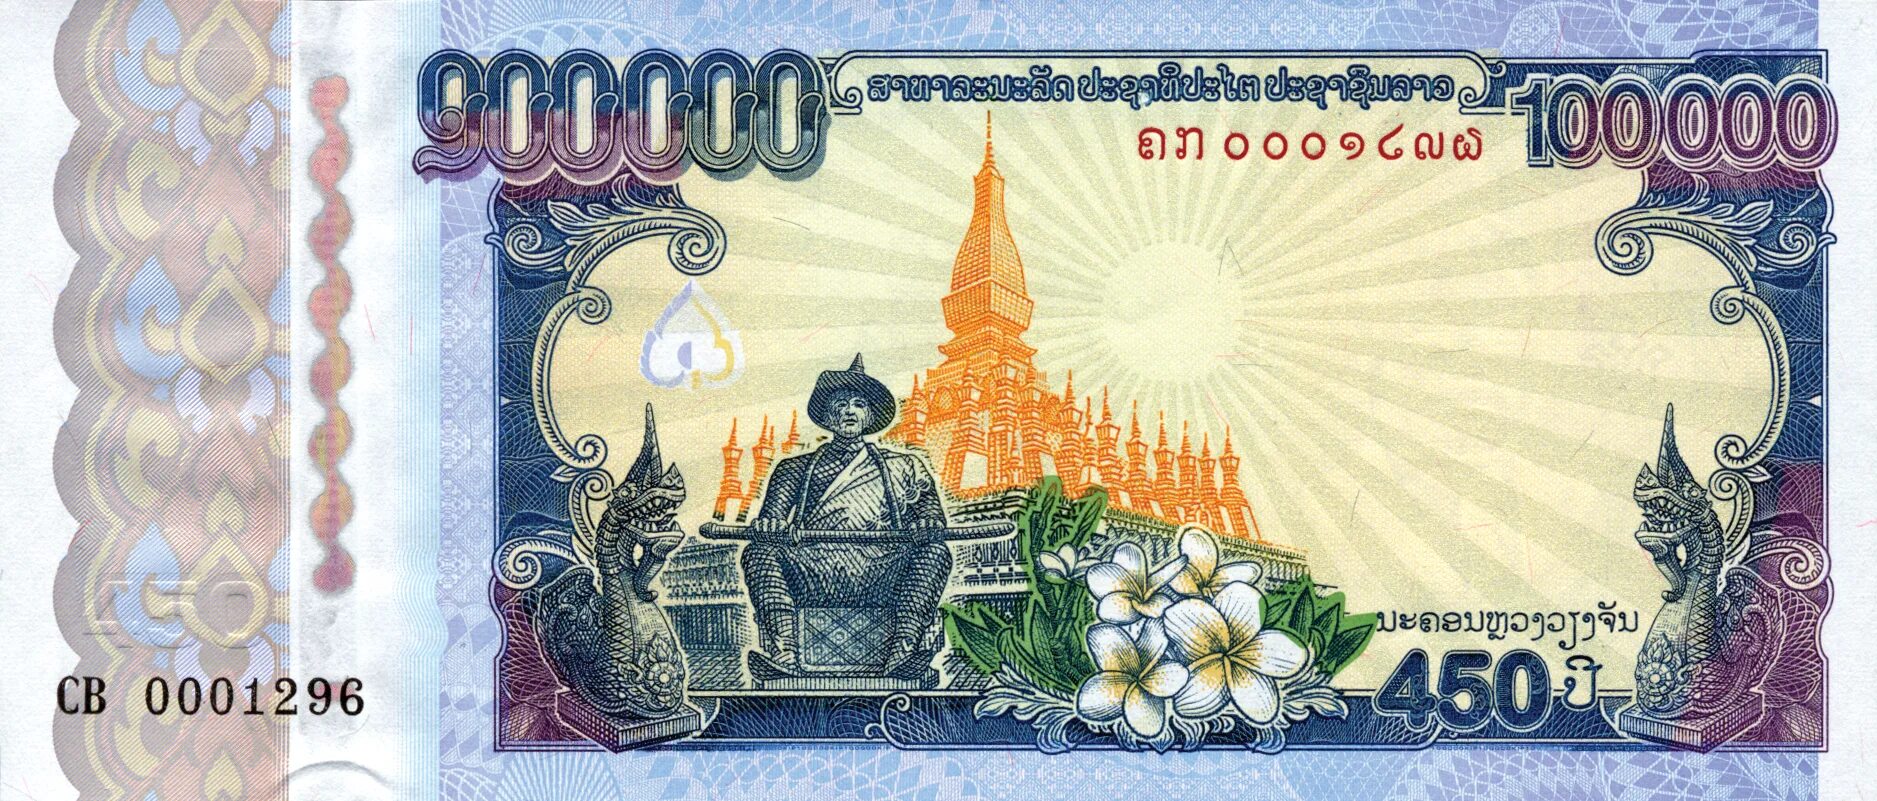 100.000 100. Банкноты Лаоса. Лаосский КИП. Банкнота 100 Лаоса. Банкнота Лаос 100 кипов.